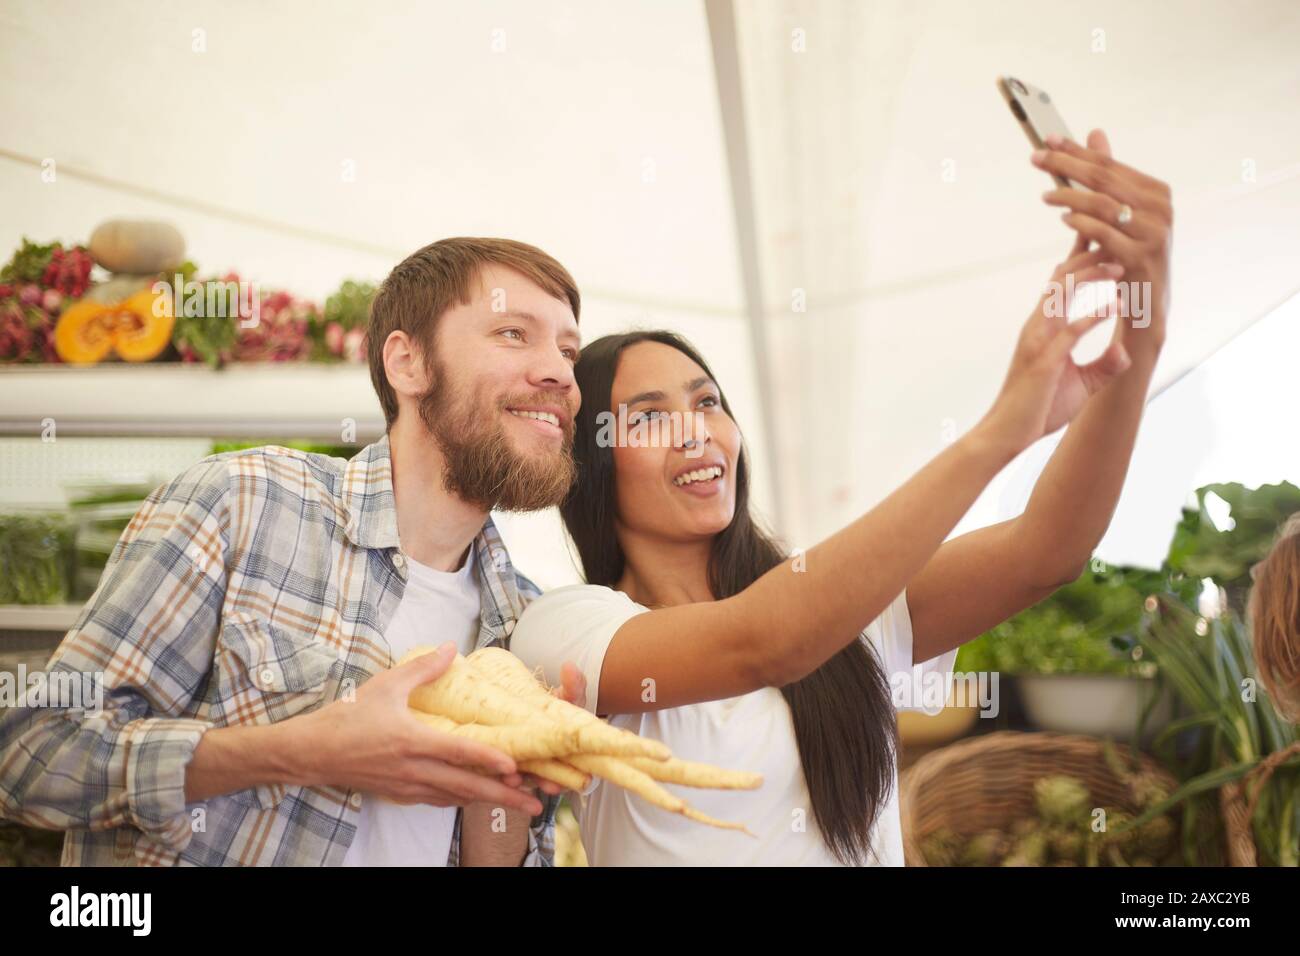 Lächelndes Paar, das selfie auf dem Bauernmarkt mitnimmt Stockfoto